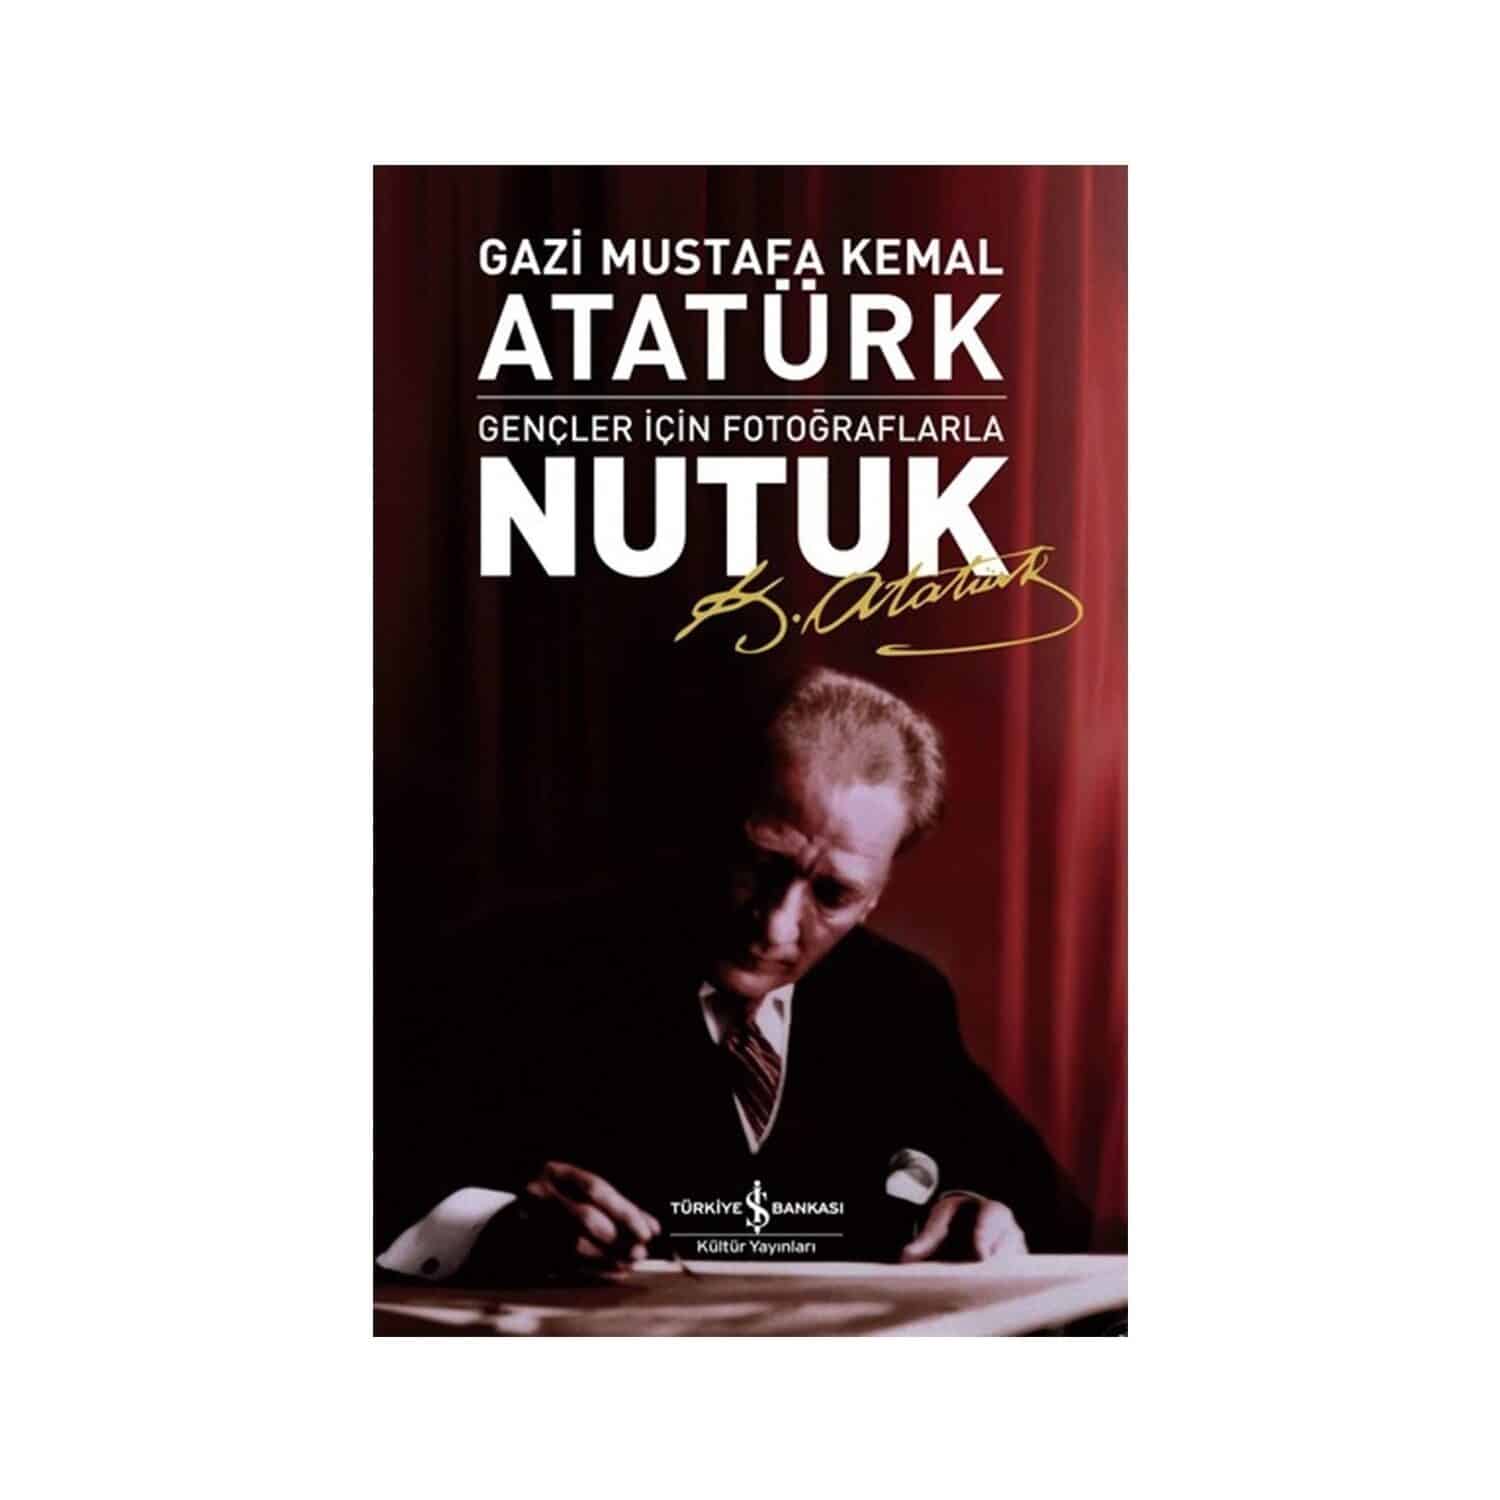 Nutuk Özet – Nutuk Mustafa Kemal Atatürk